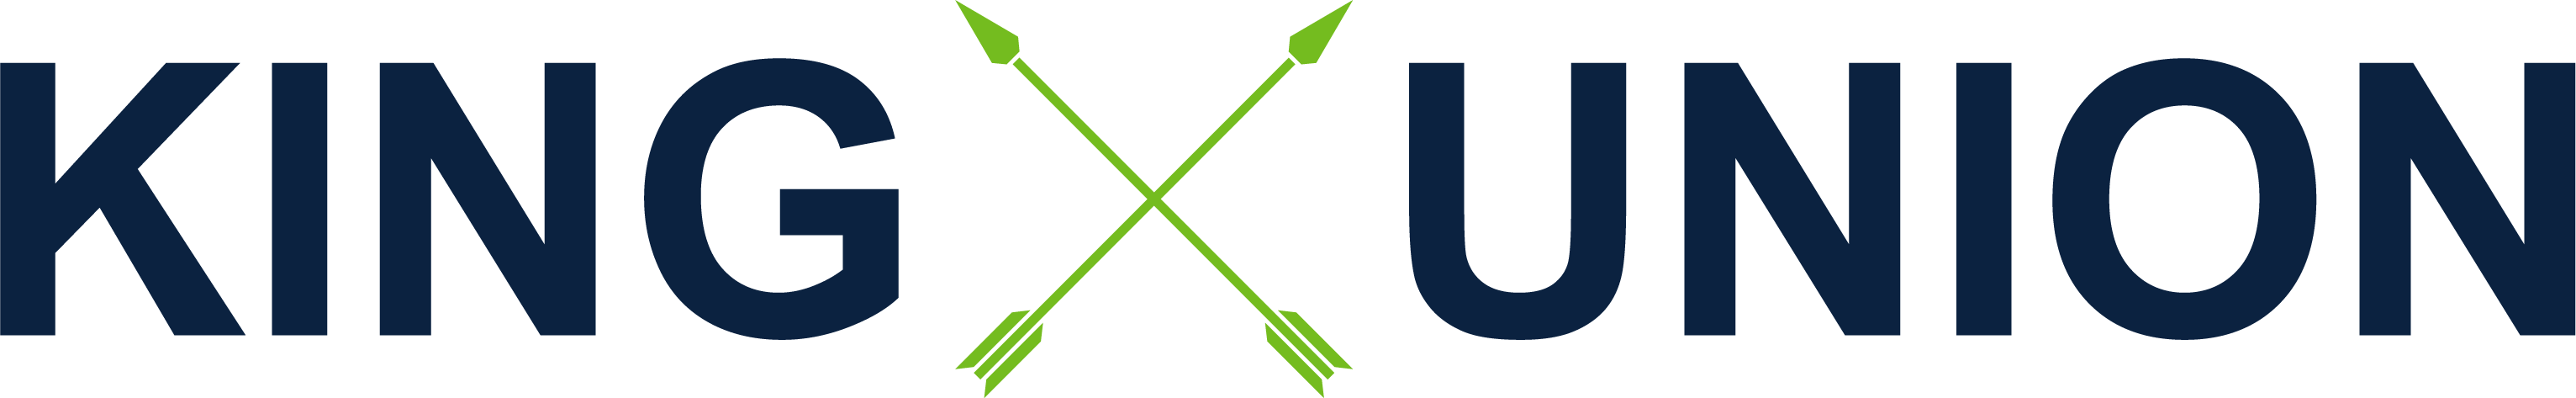 King Union Logo